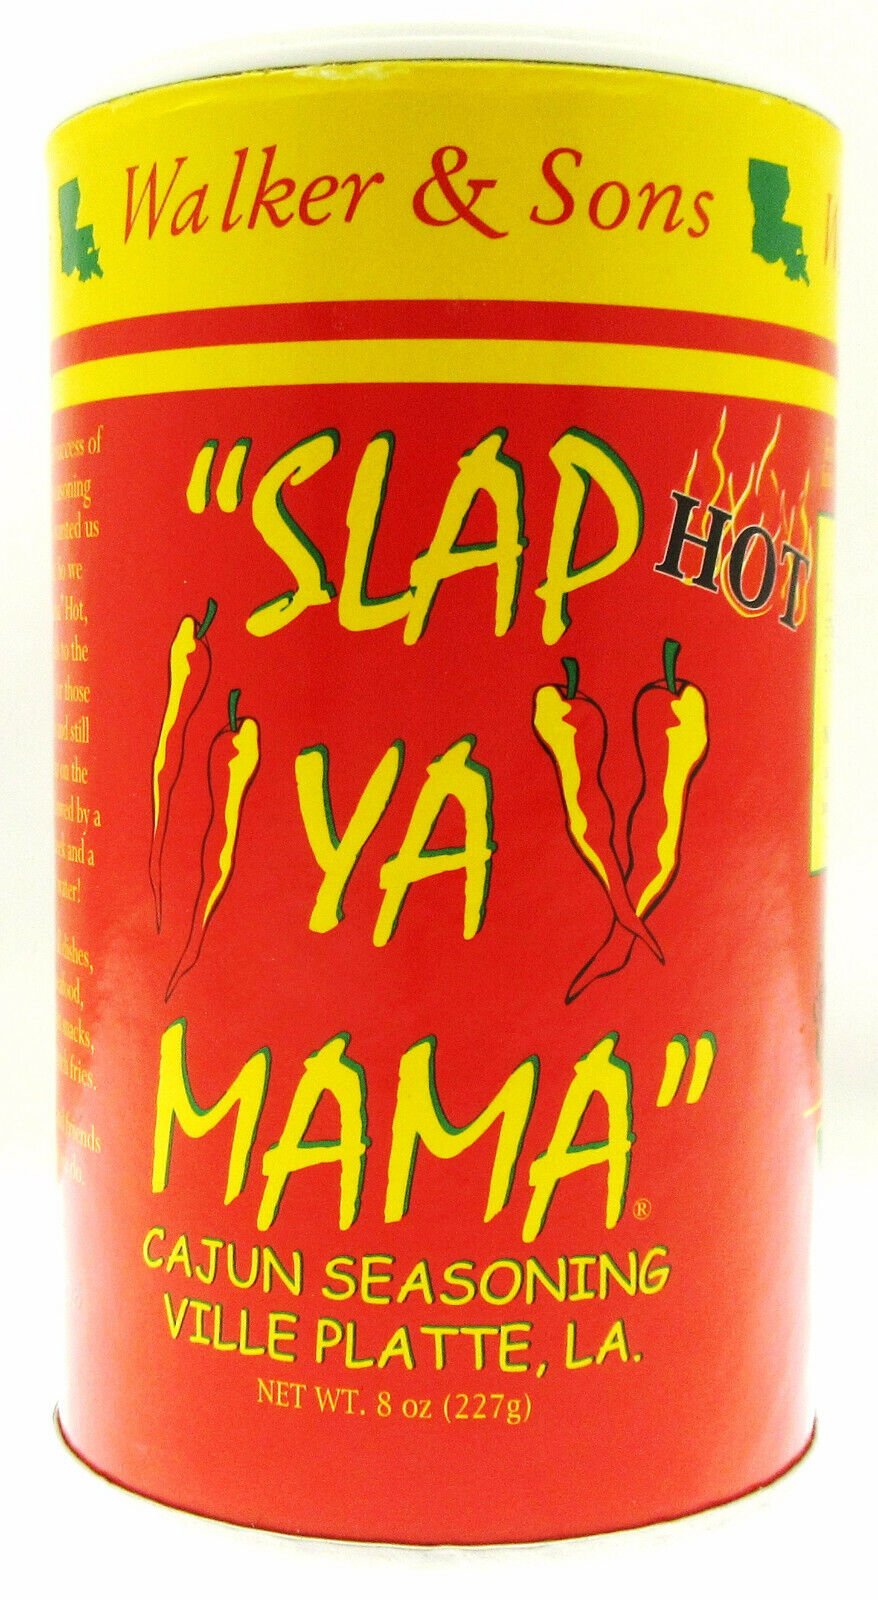 Slap Ya Mama Cajun Seasoning